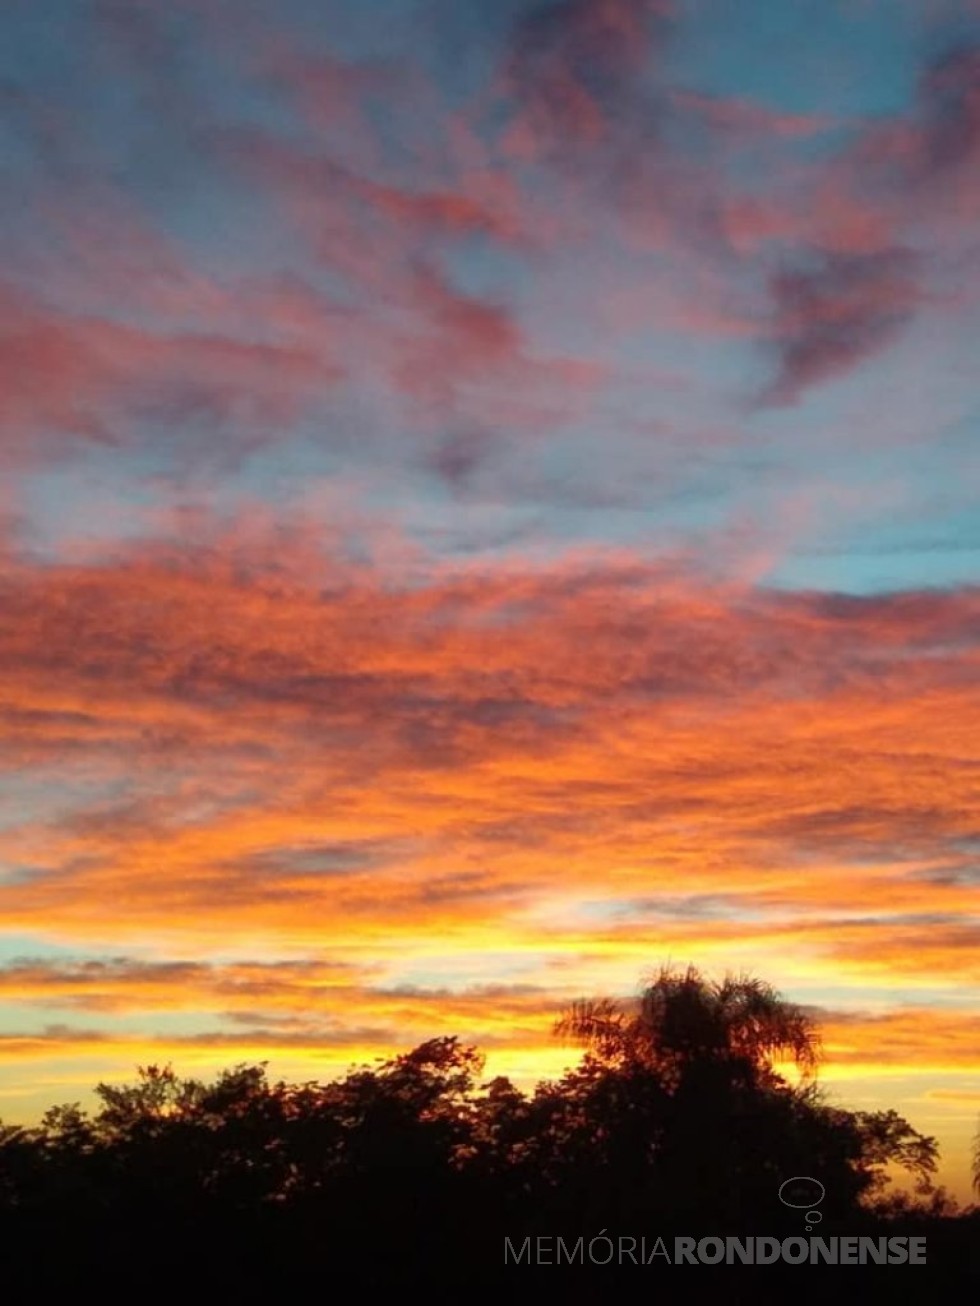 || Outro instantâneo do pôr do sol em Marechal Cândido Rondon, em 21 de dezembro de 2020. 
Imagem: Acervo e crédito Ilda Bet - FOTO 17 - 